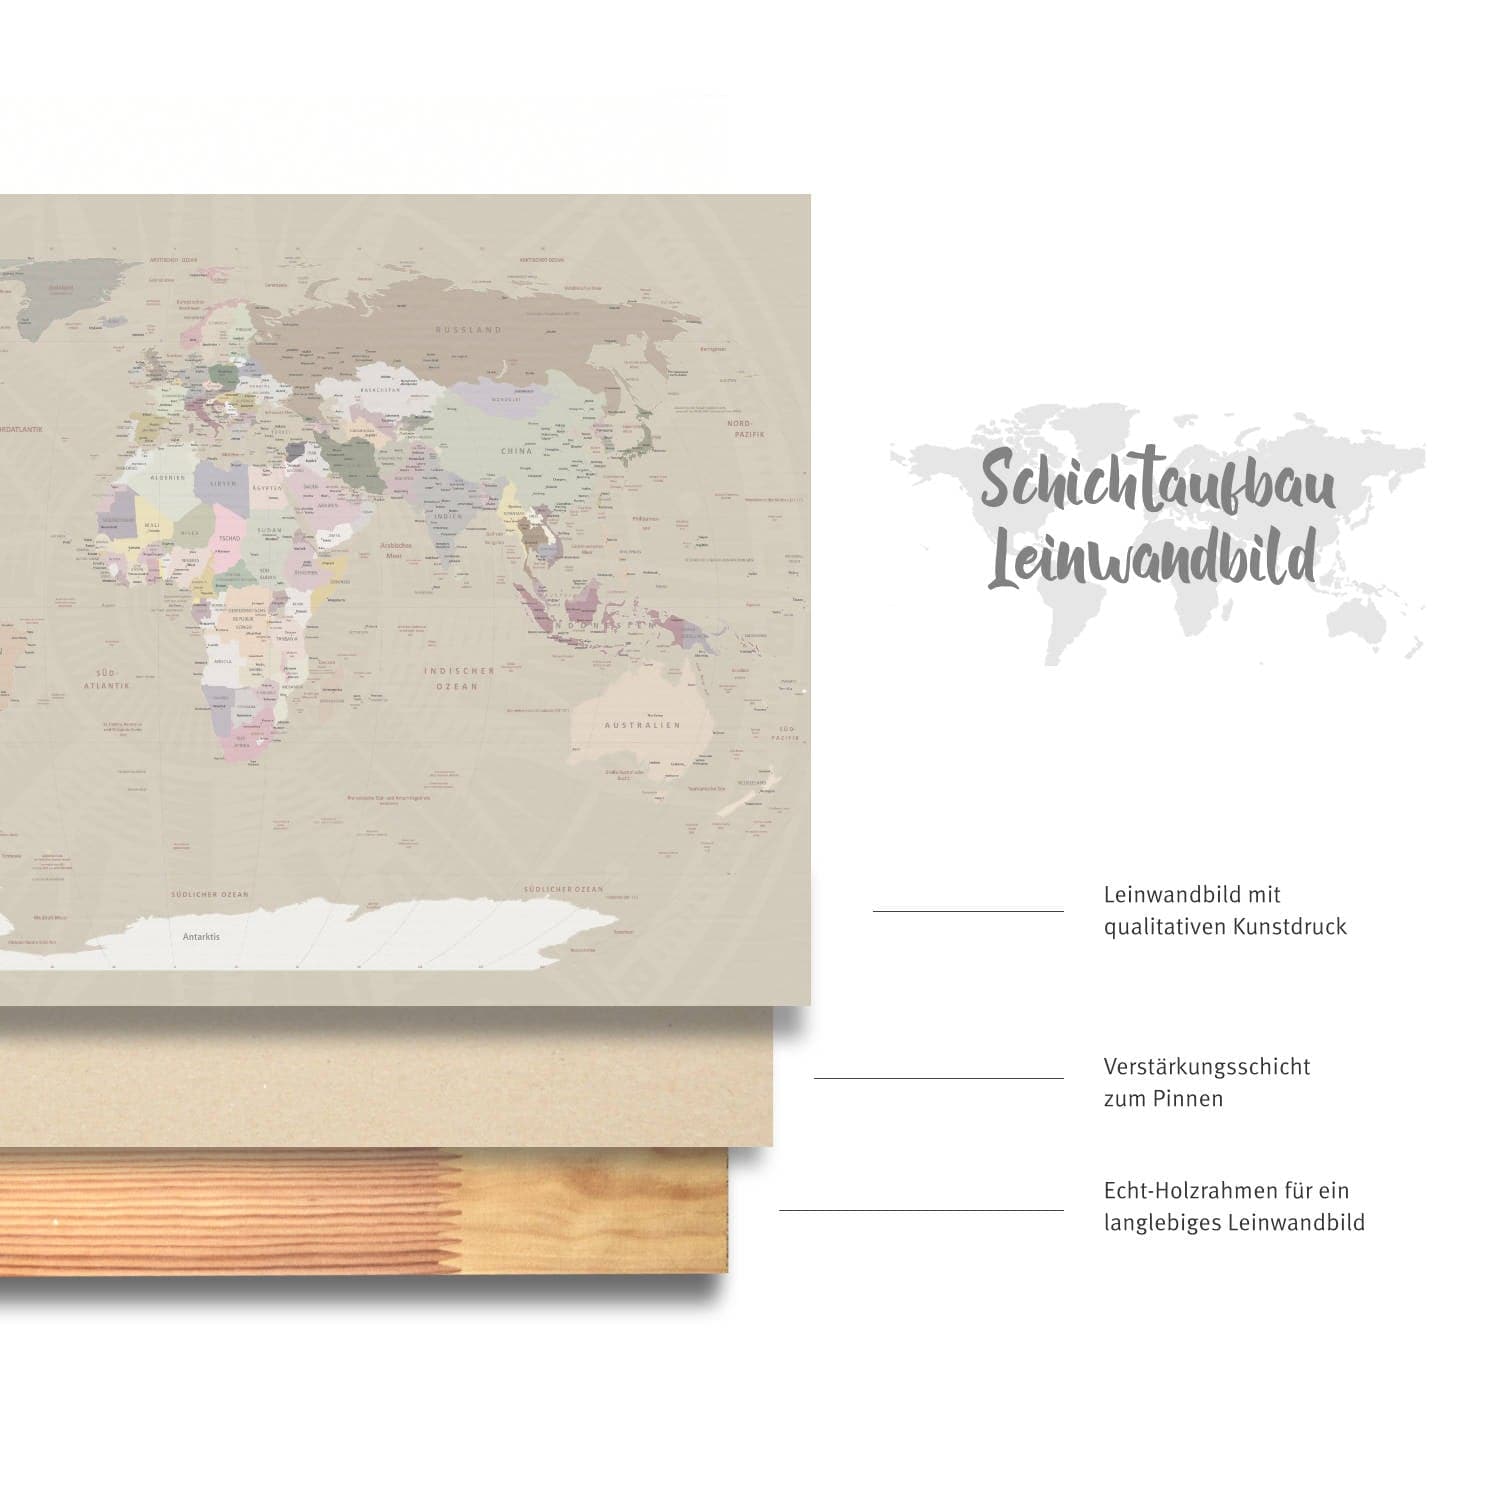 Deine Weltkarte Cappuccino besteht aus echter Baumwoll-Leinwand mit einer verstärkten Schicht zum Pinnen und einem Echtholz-Keilrahmen